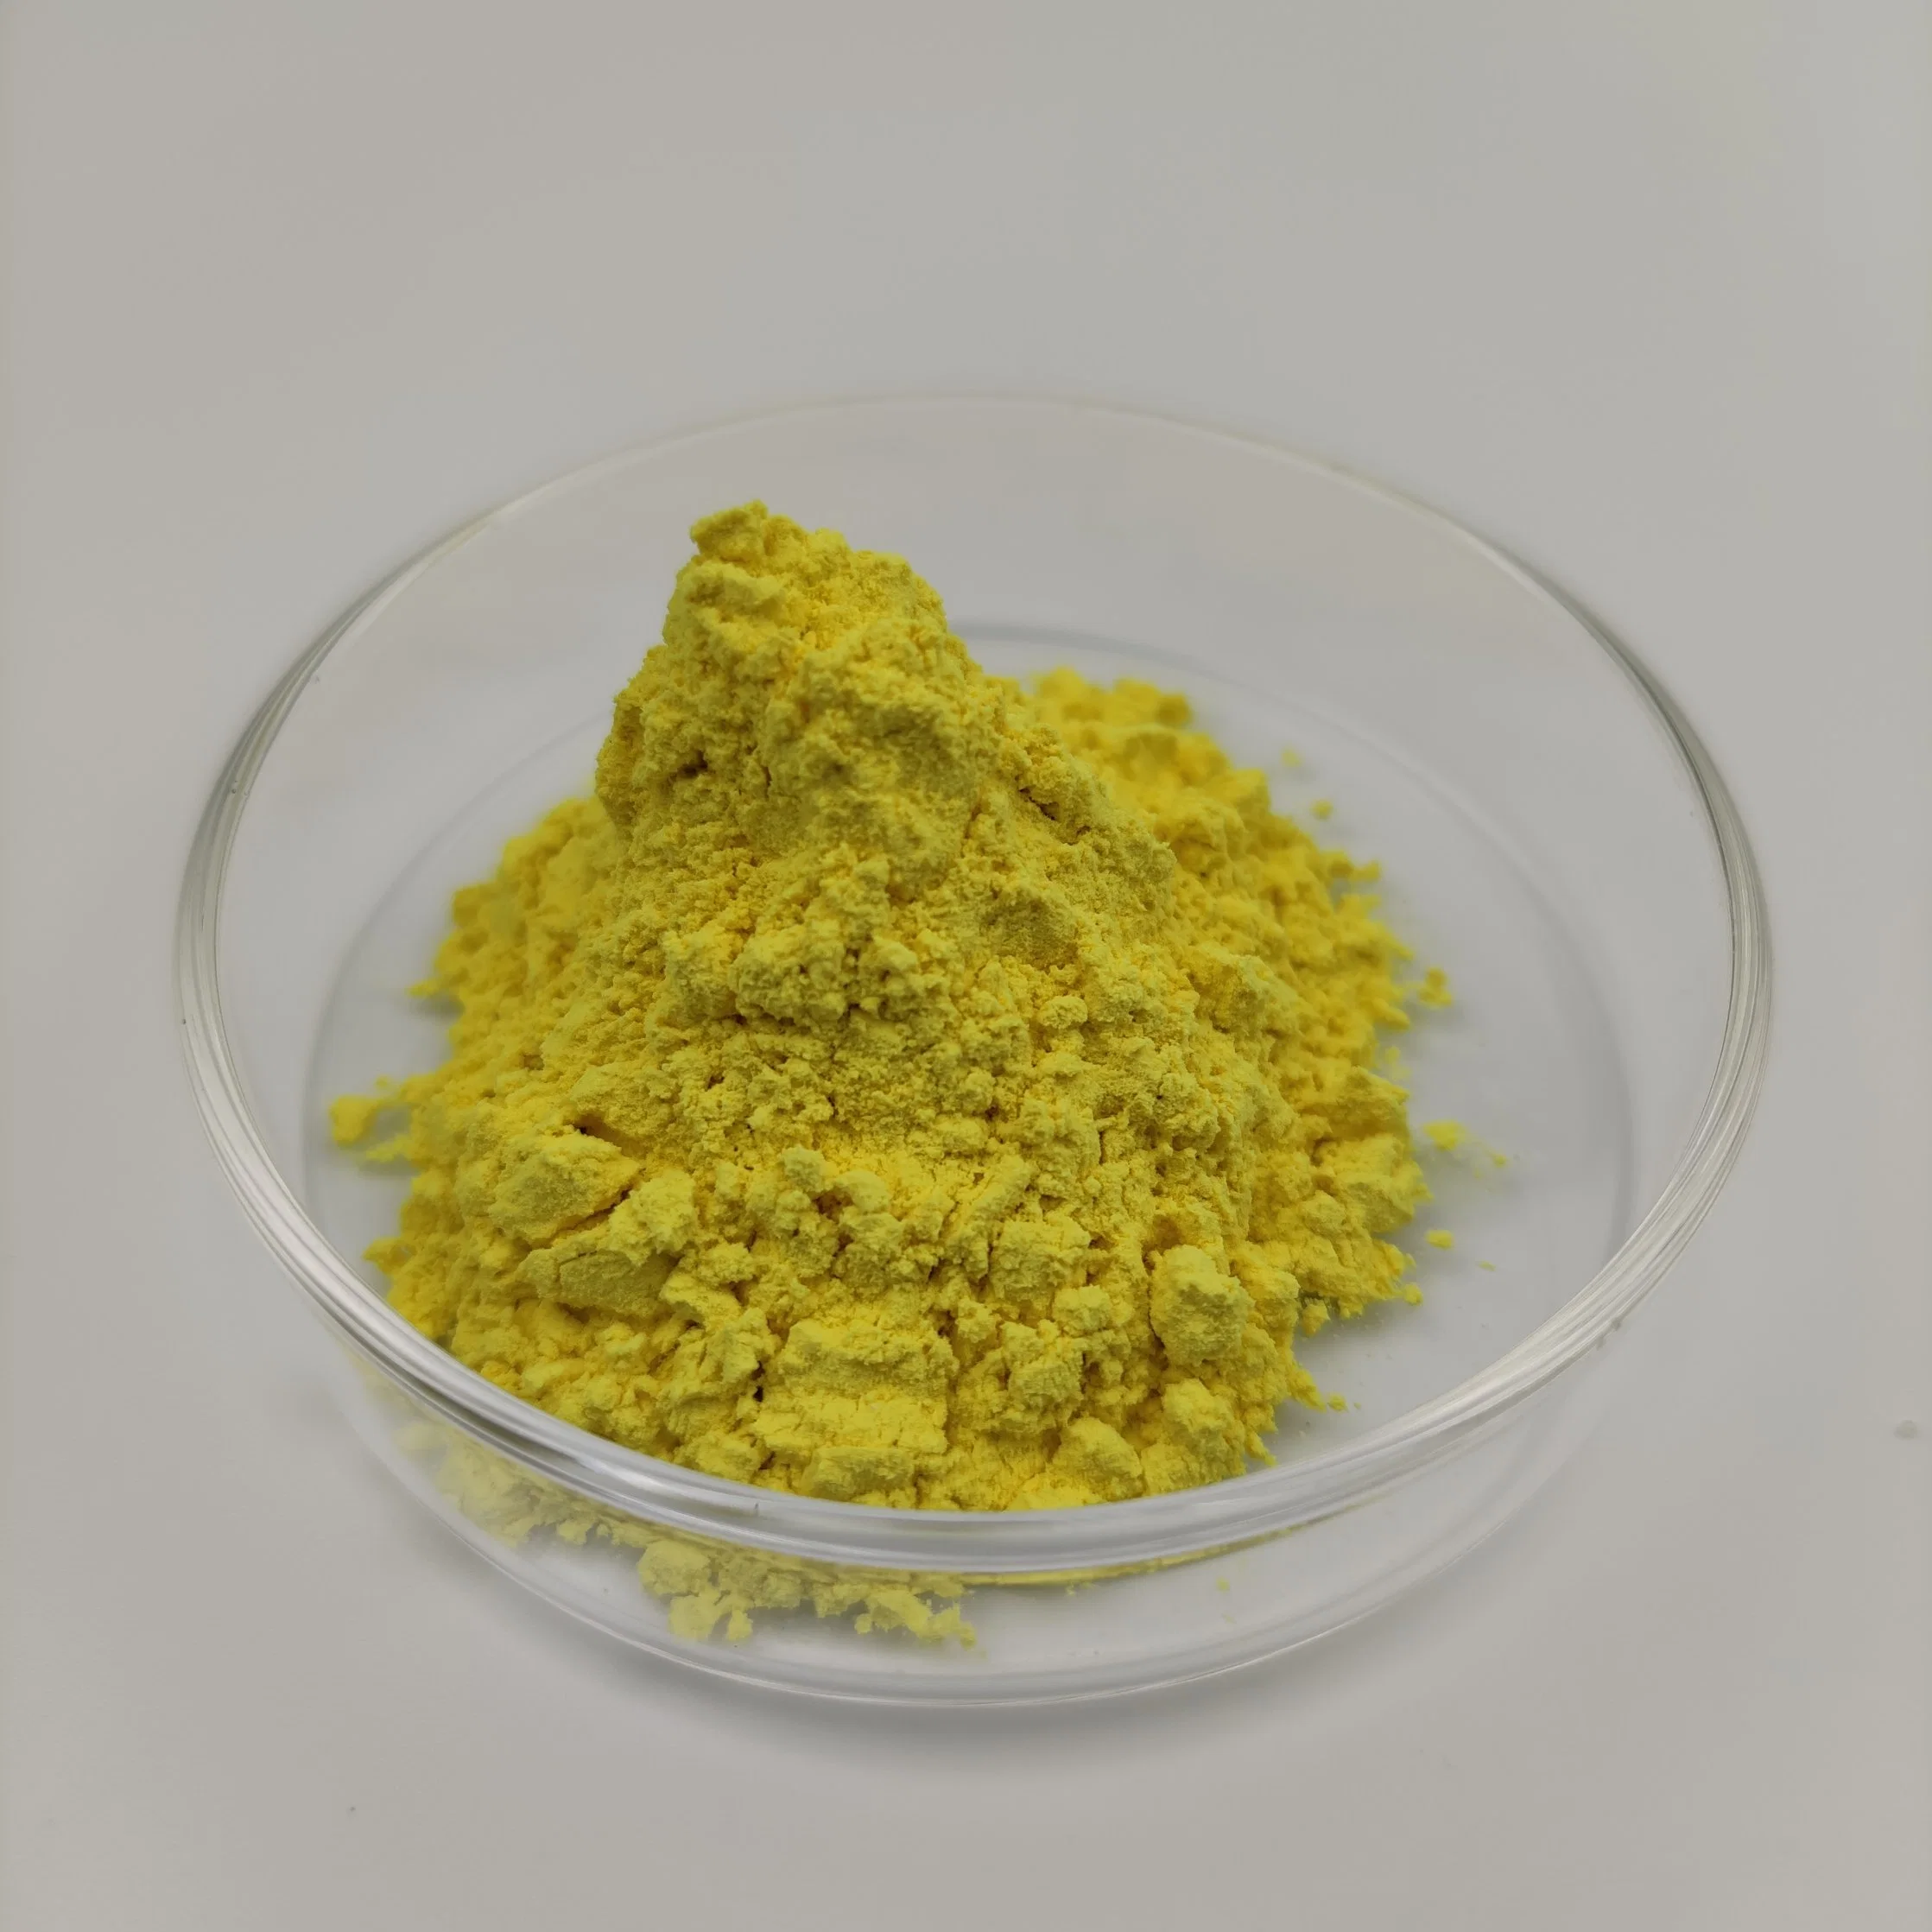 Suministro directo de las fábricas de medicamentos veterinarios: Amarillo de alta calidad de Materias Primas de oxitetraciclina, el 99% de pureza, en forma de polvo